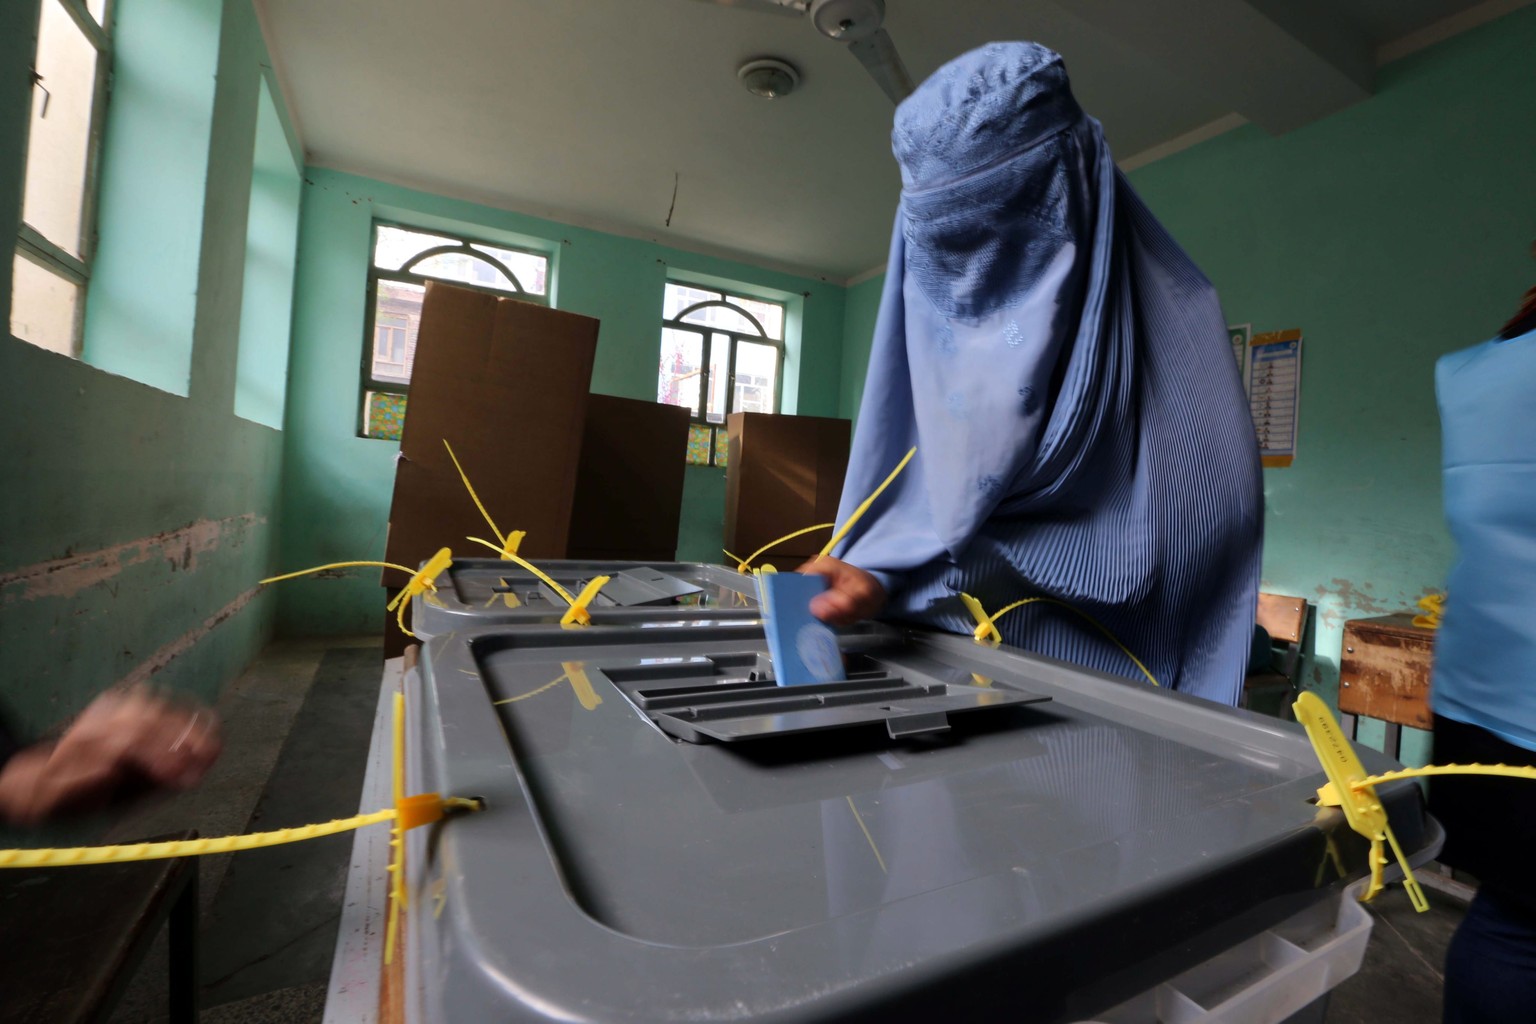 Höchste Sicherheitsvorkehrungen und Massnahmen gegen Wahlbetrug: Eine Frau in Afghanistan gibt ihre Stimme ab.